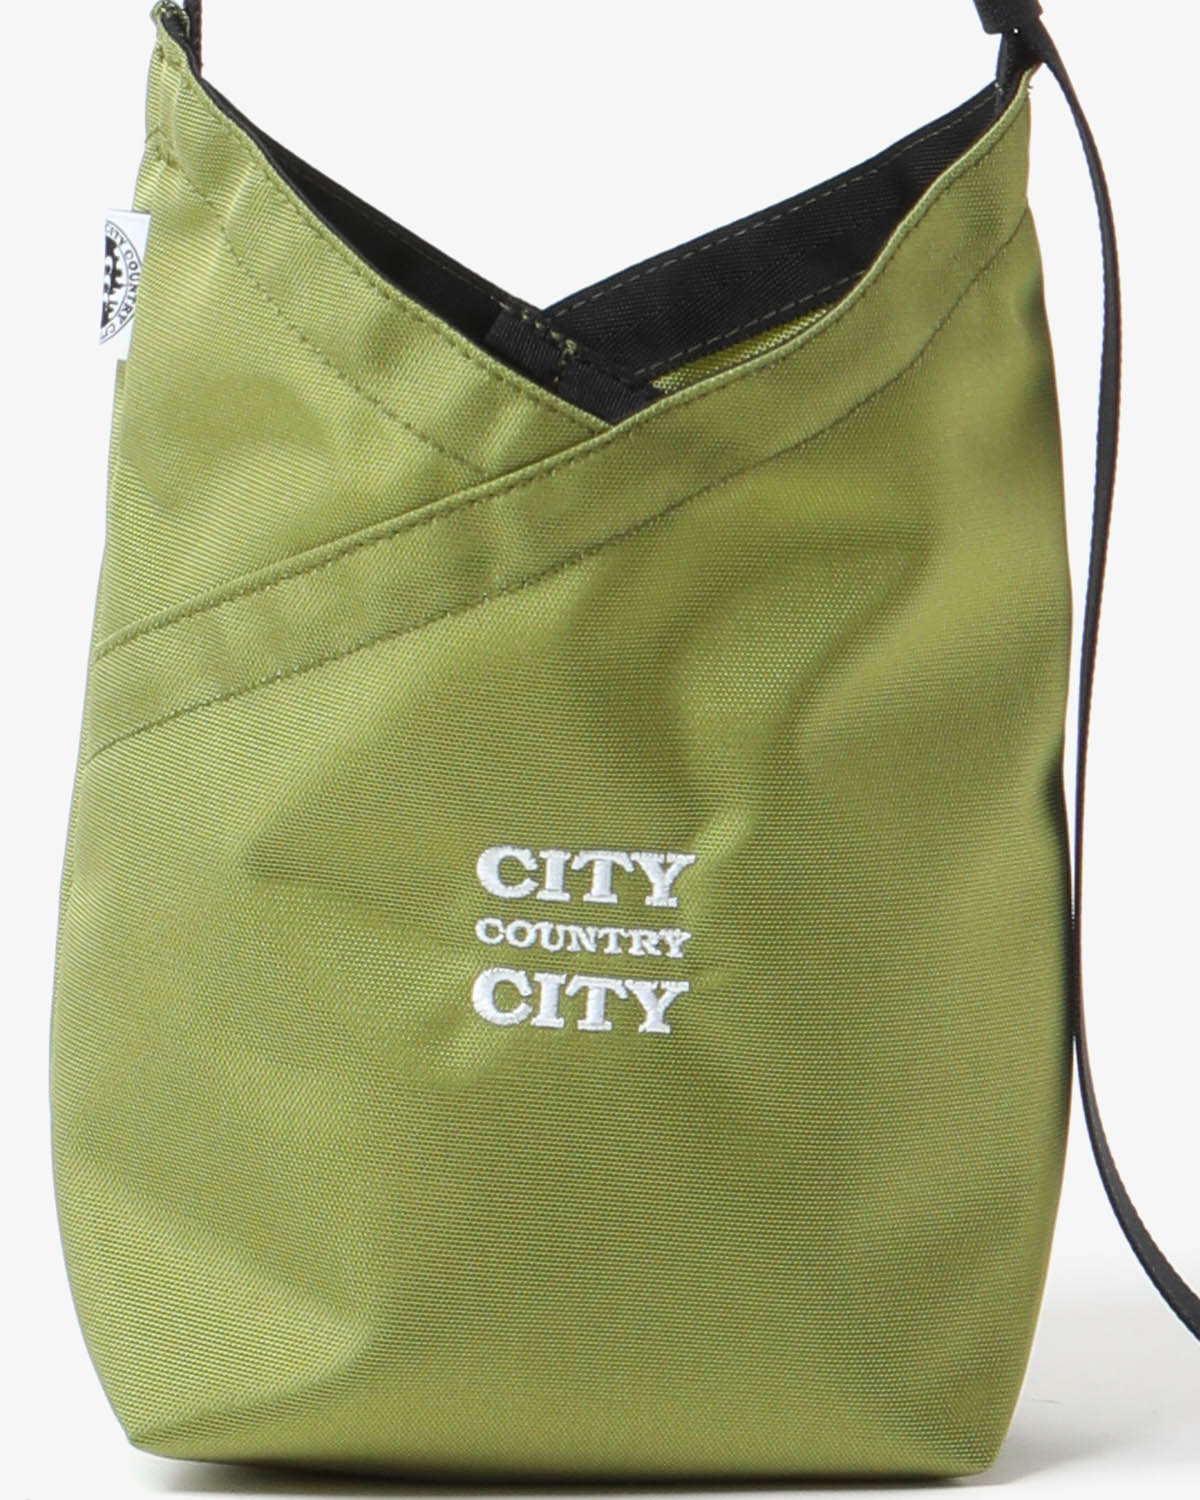 AZUMA SHOULDER BAG NYLON OXFORD for CITY COUNTRY CITY